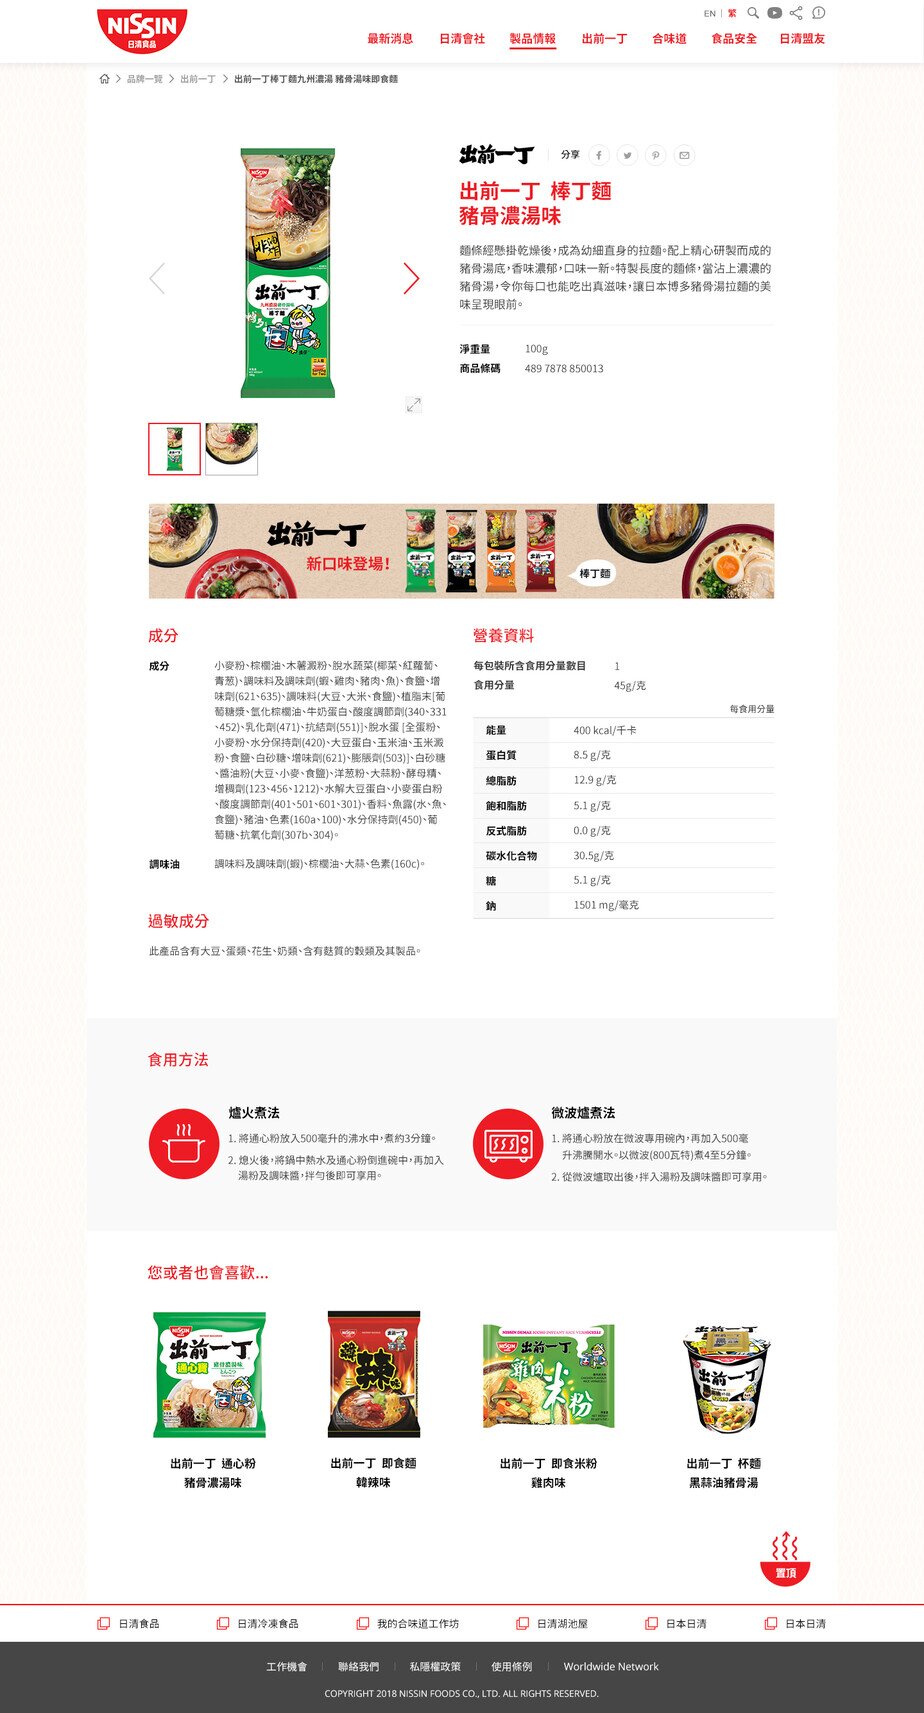 Nissin Foods HK website screenshot for desktop version 4 of 4